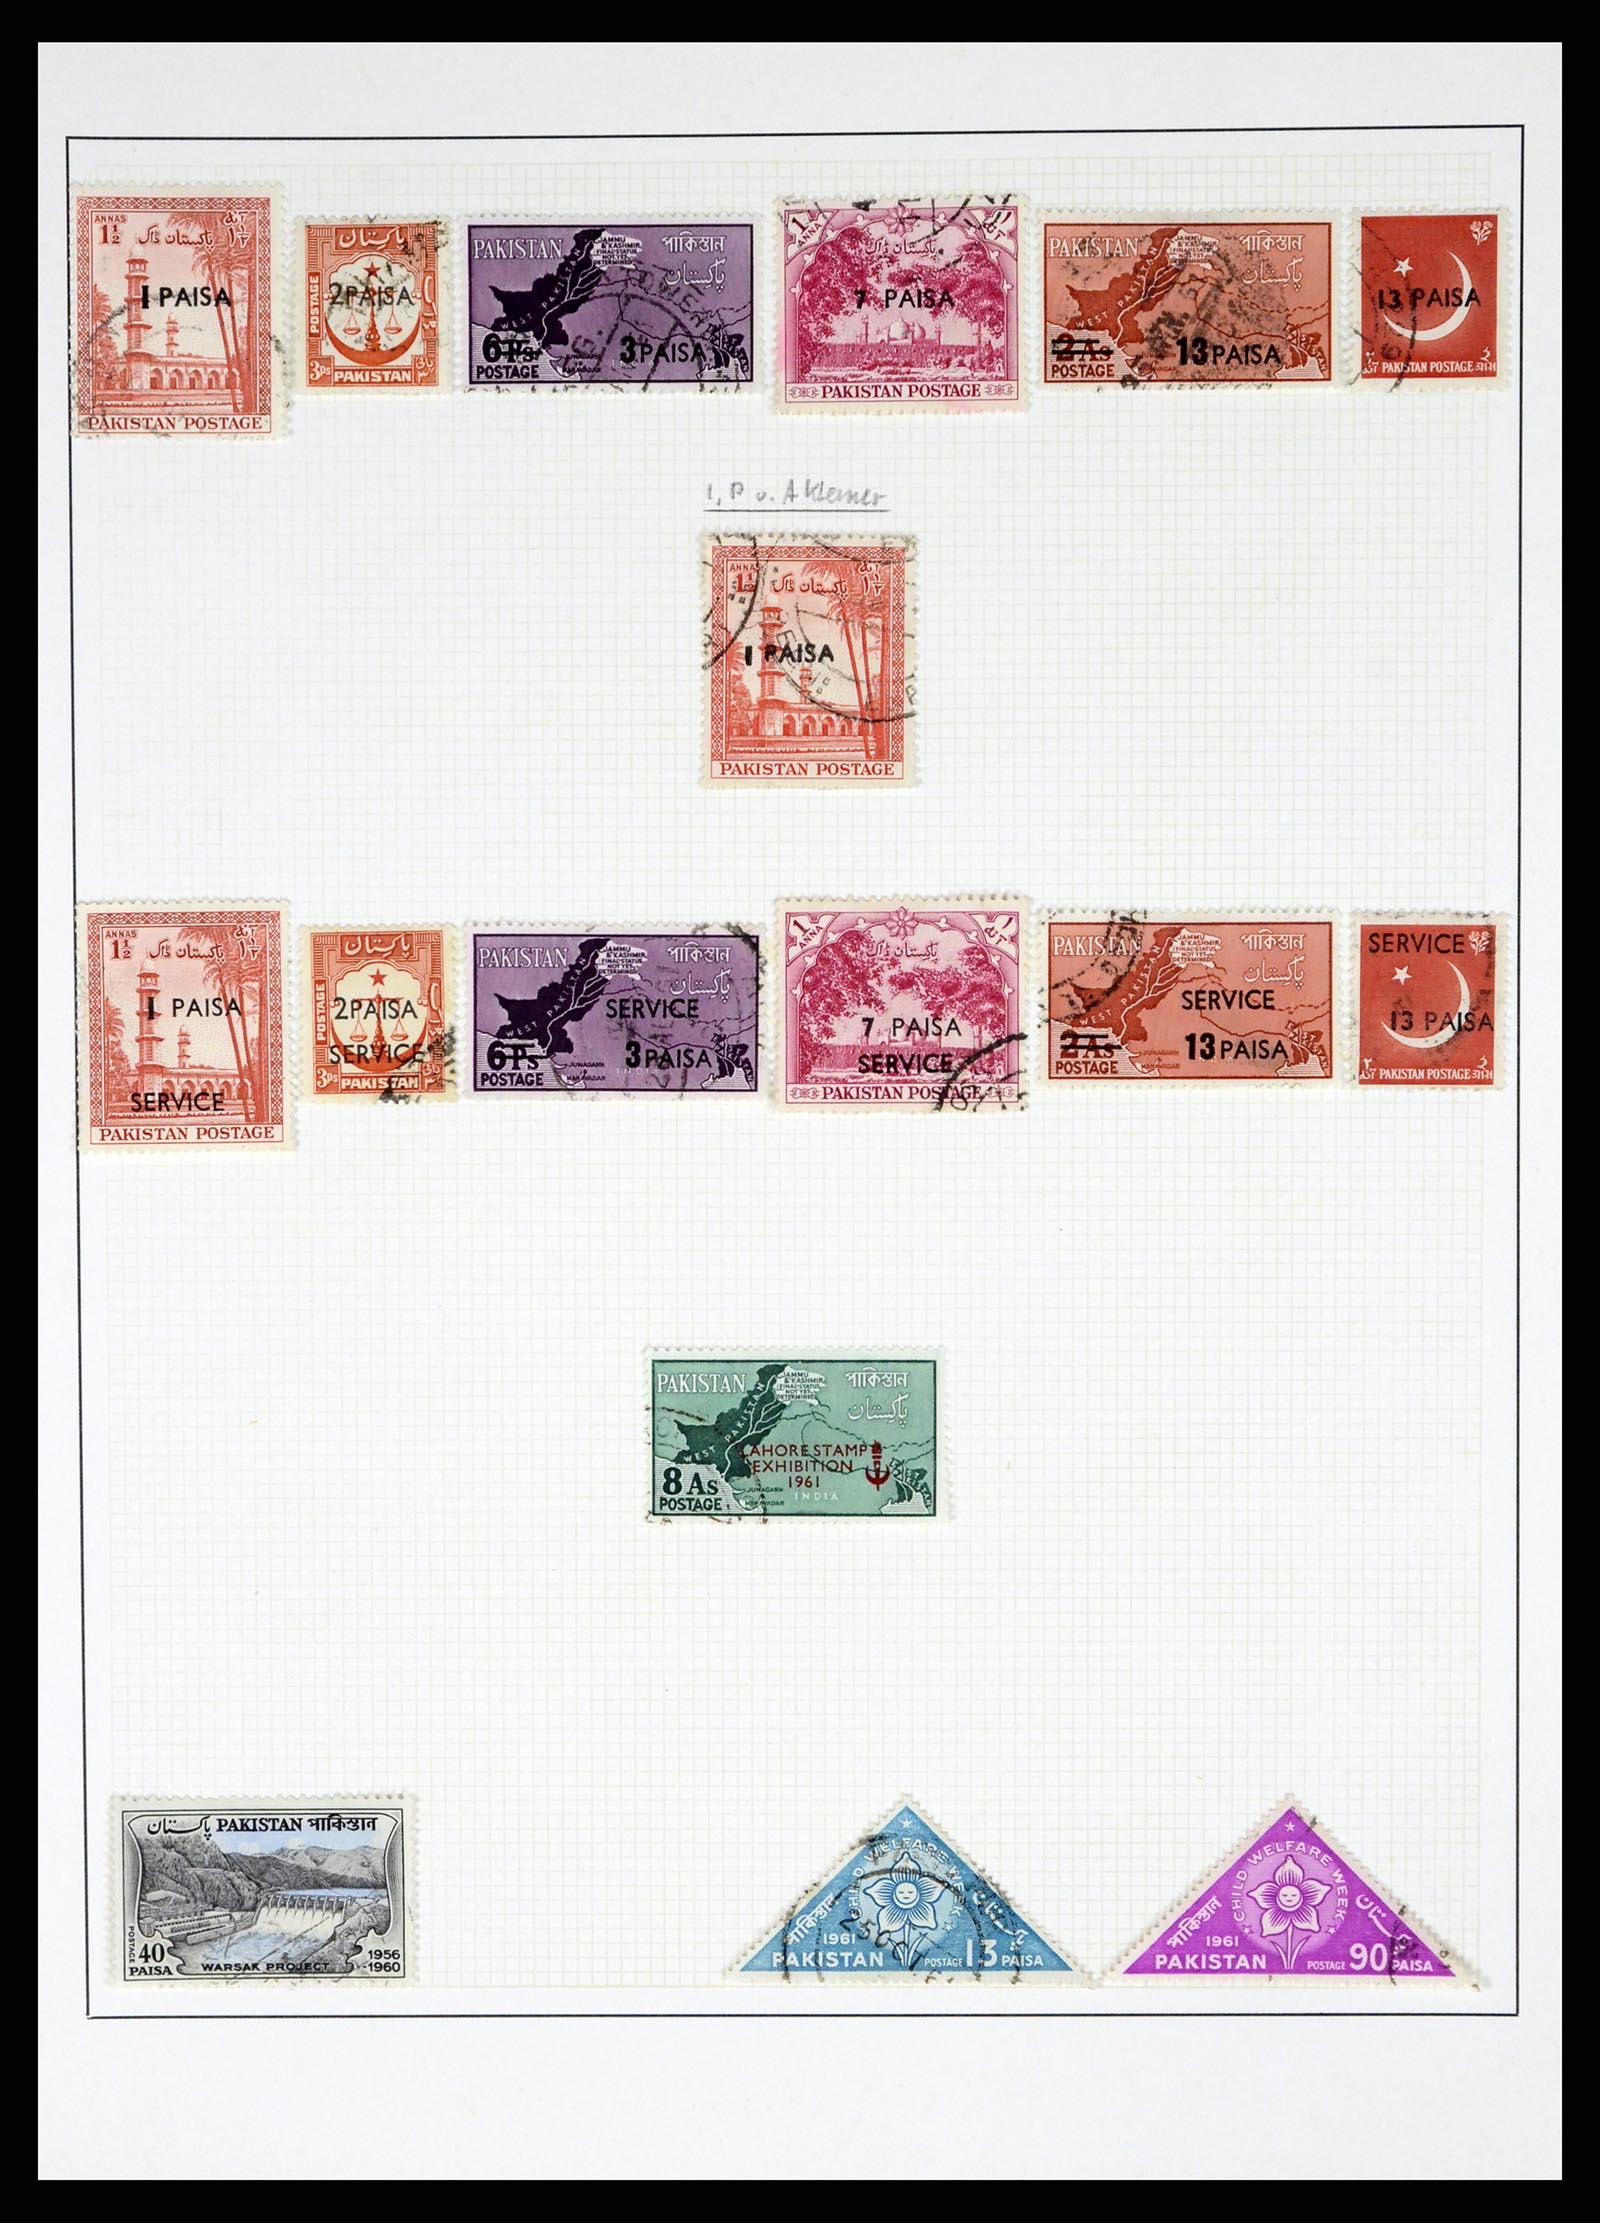 37619 014 - Stamp collection 37619 Pakistan/Bangladesh 1947-2000.